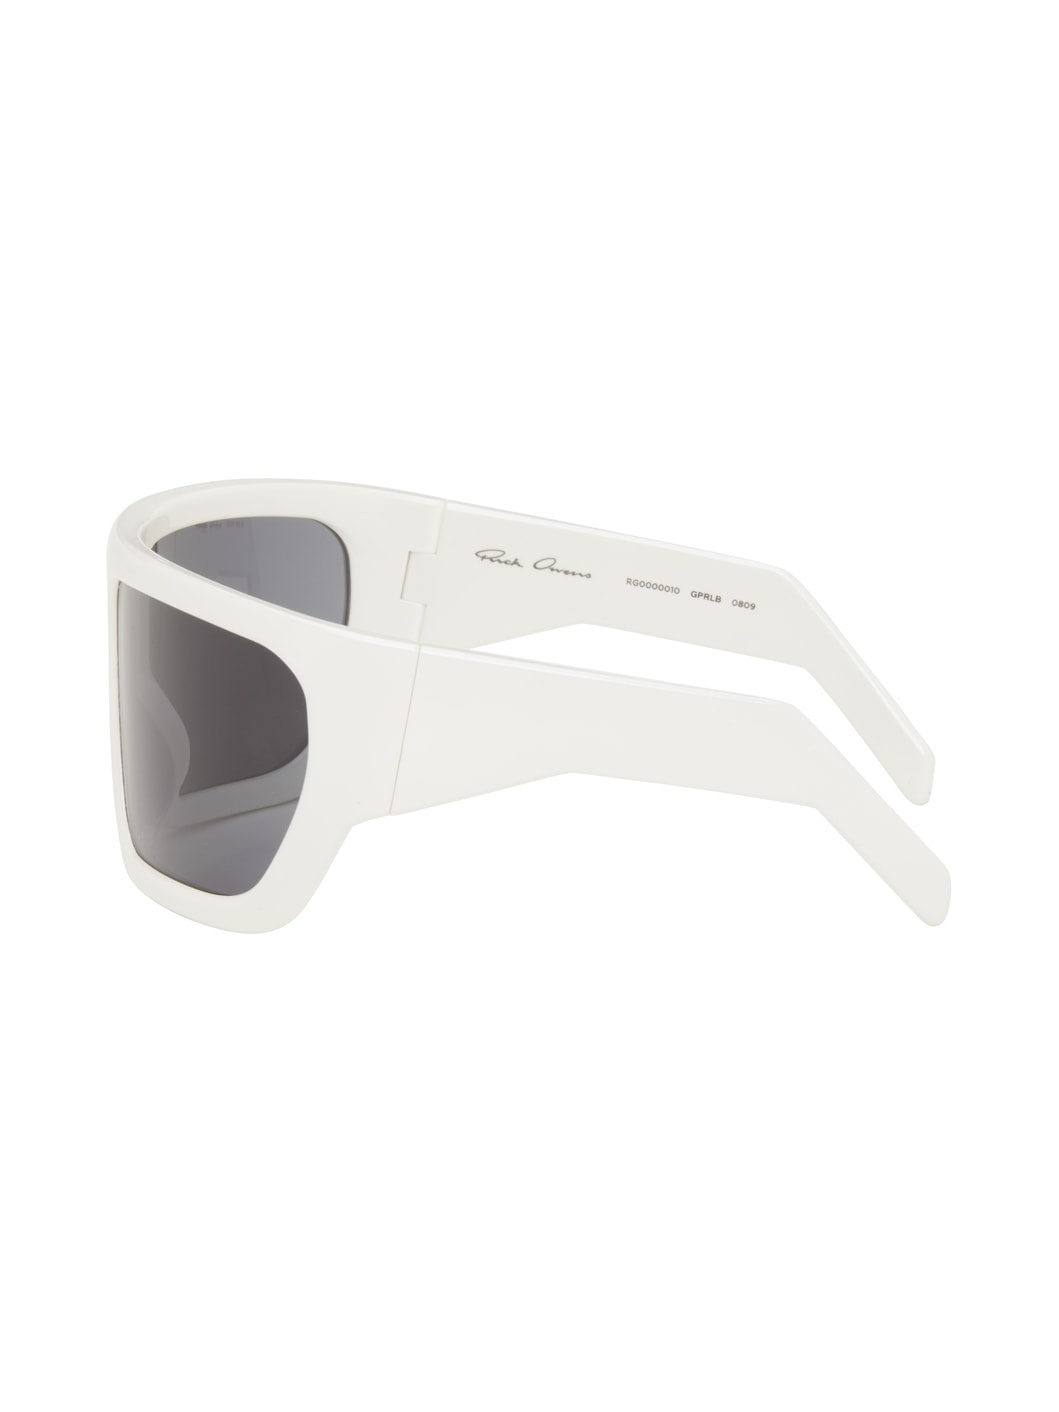 Off-White Davis Sunglasses - 3